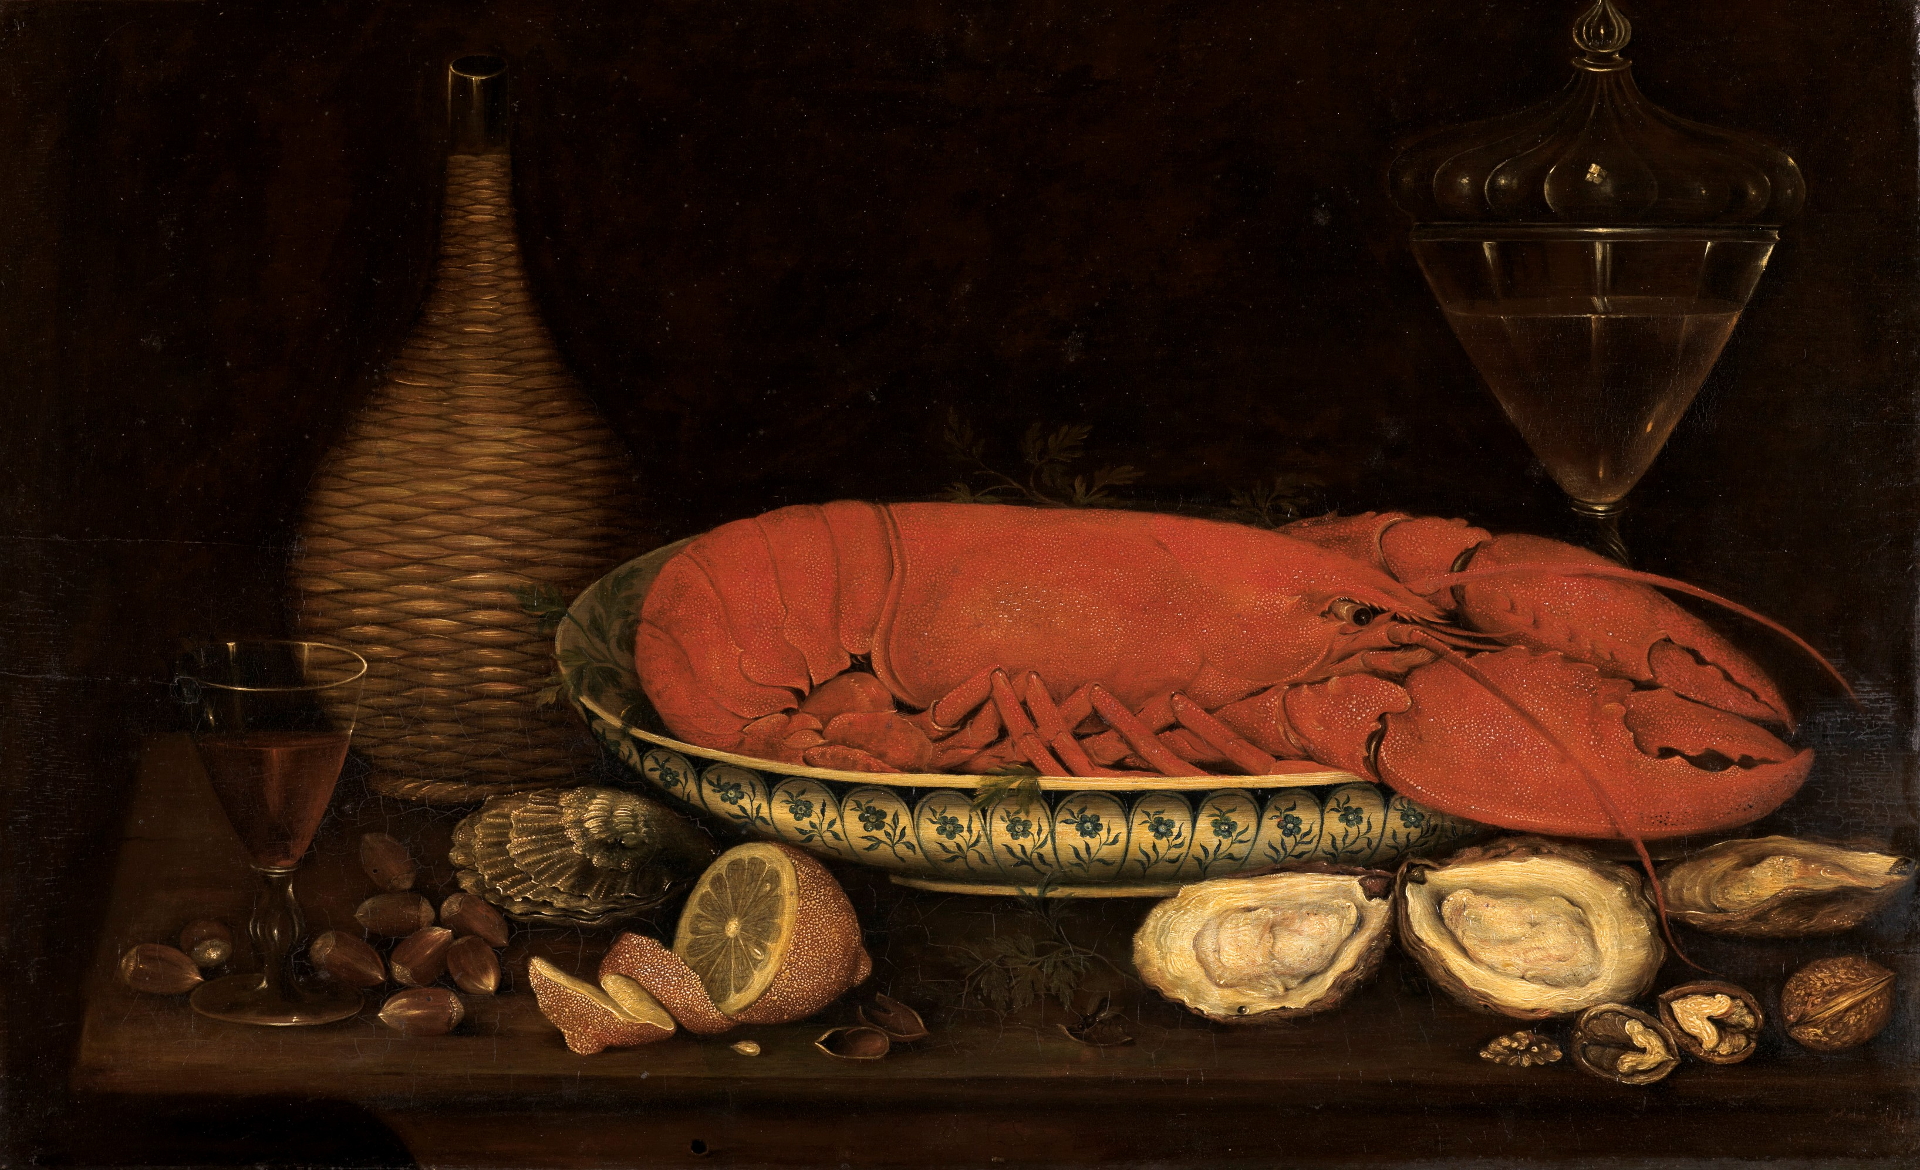 Frühstücksstillleben mit Hummer von Johann Seitz. Es zeigt eine Schale auf einem Tisch. In der Schale liegt ein Hummer. Darum stehen Gläser und Krüge.